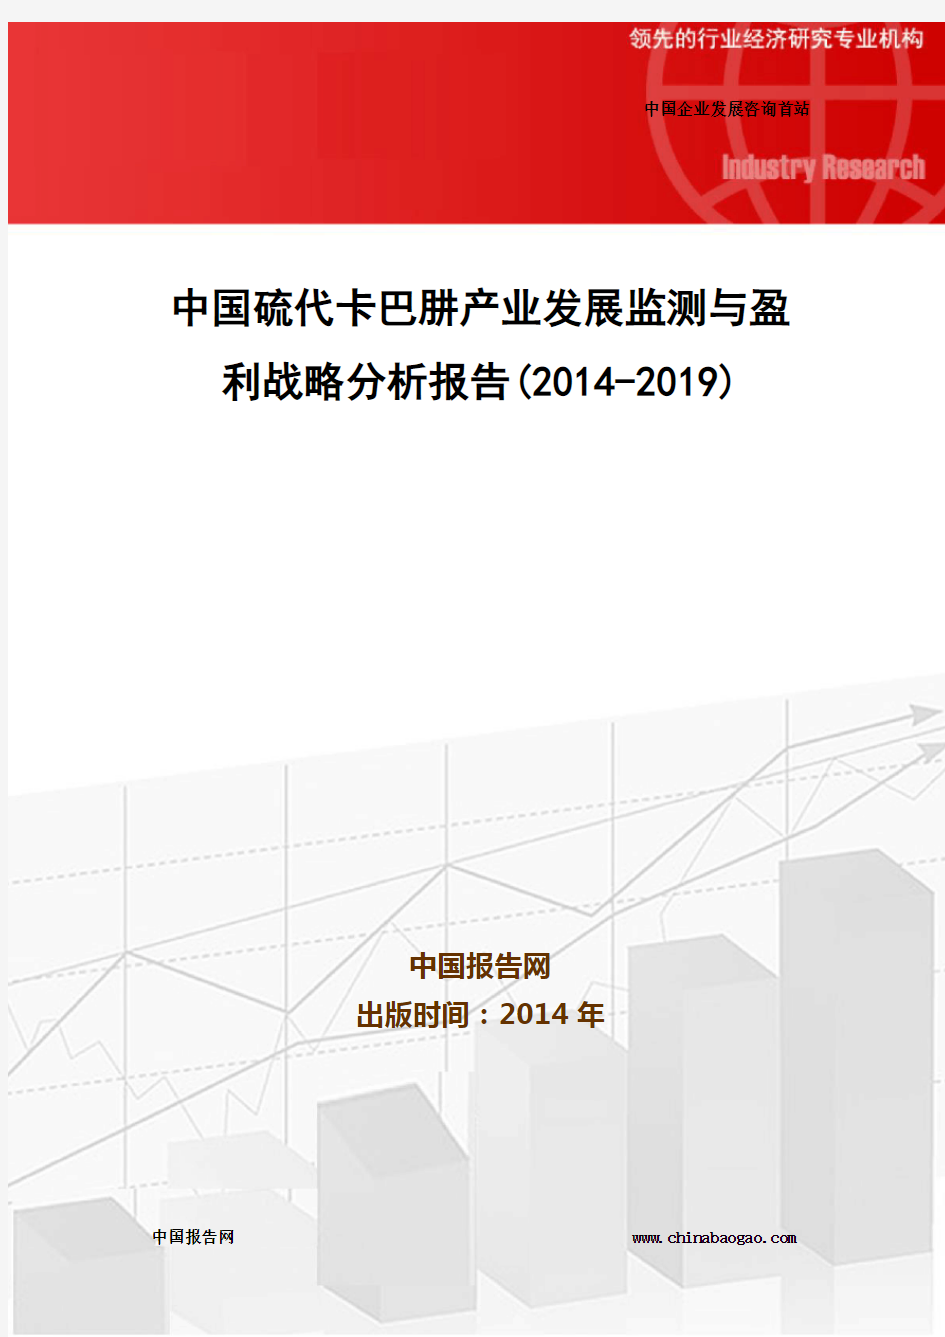 中国硫代卡巴肼产业发展监测与盈利战略分析报告(2014-2019)